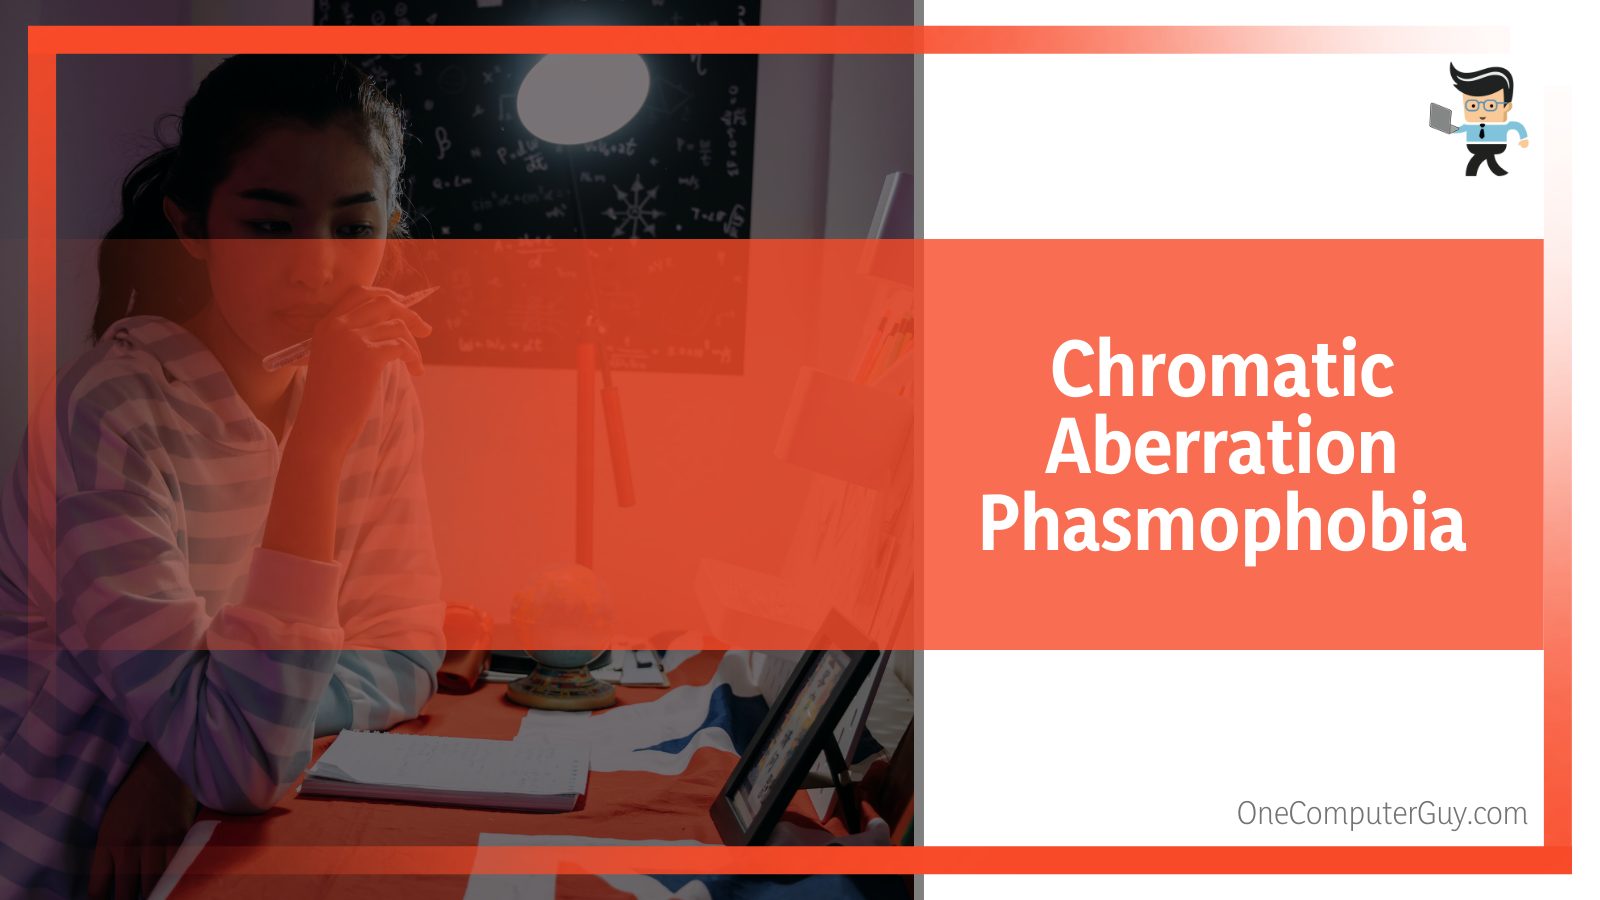 Chromatic Aberration Phasmophobia